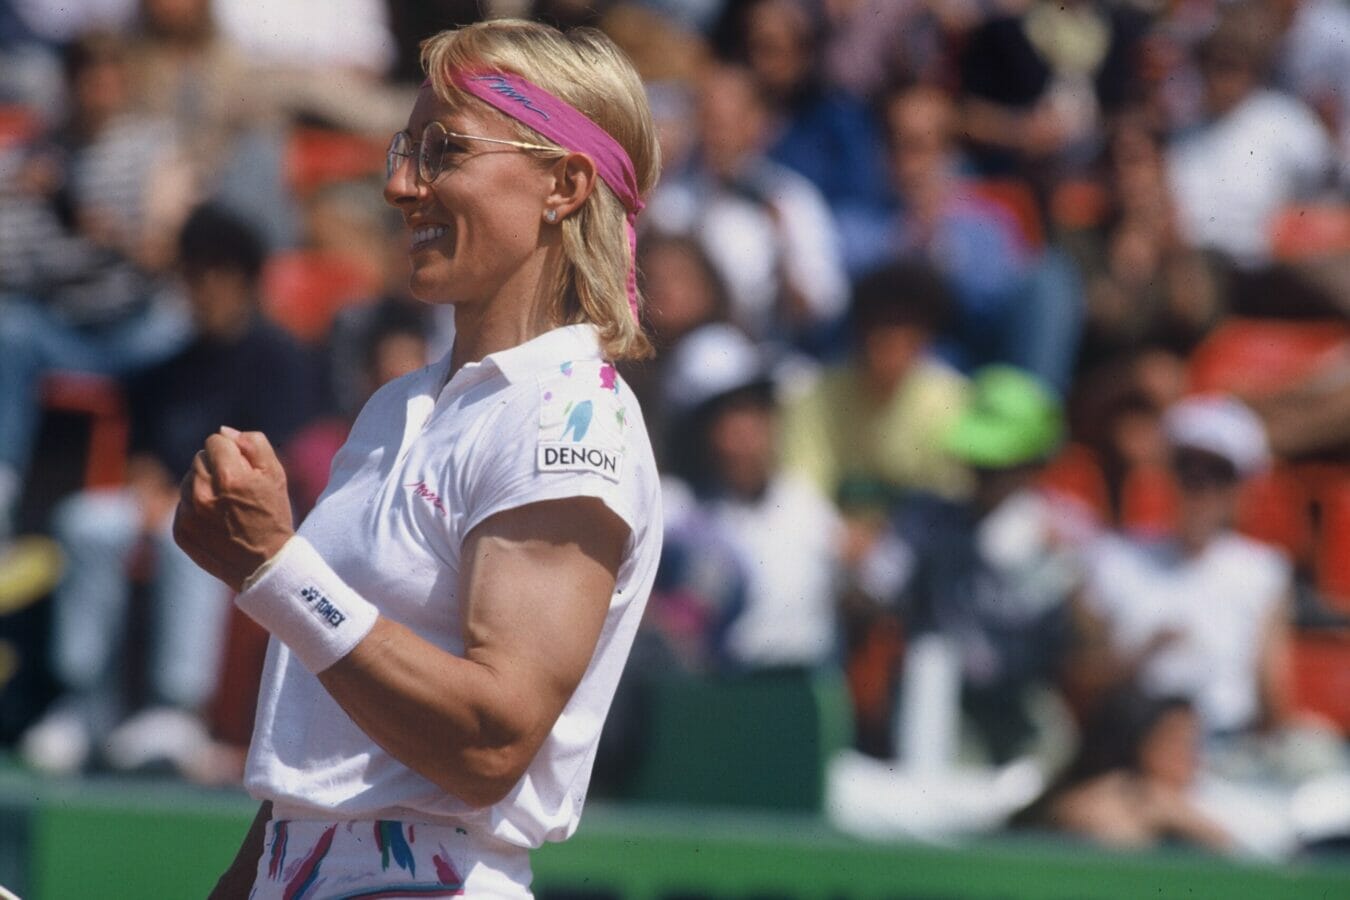 1350px x 900px - Atlete trans nel tennis, Navratilova continua a ricevere critiche - Tennis  Fever